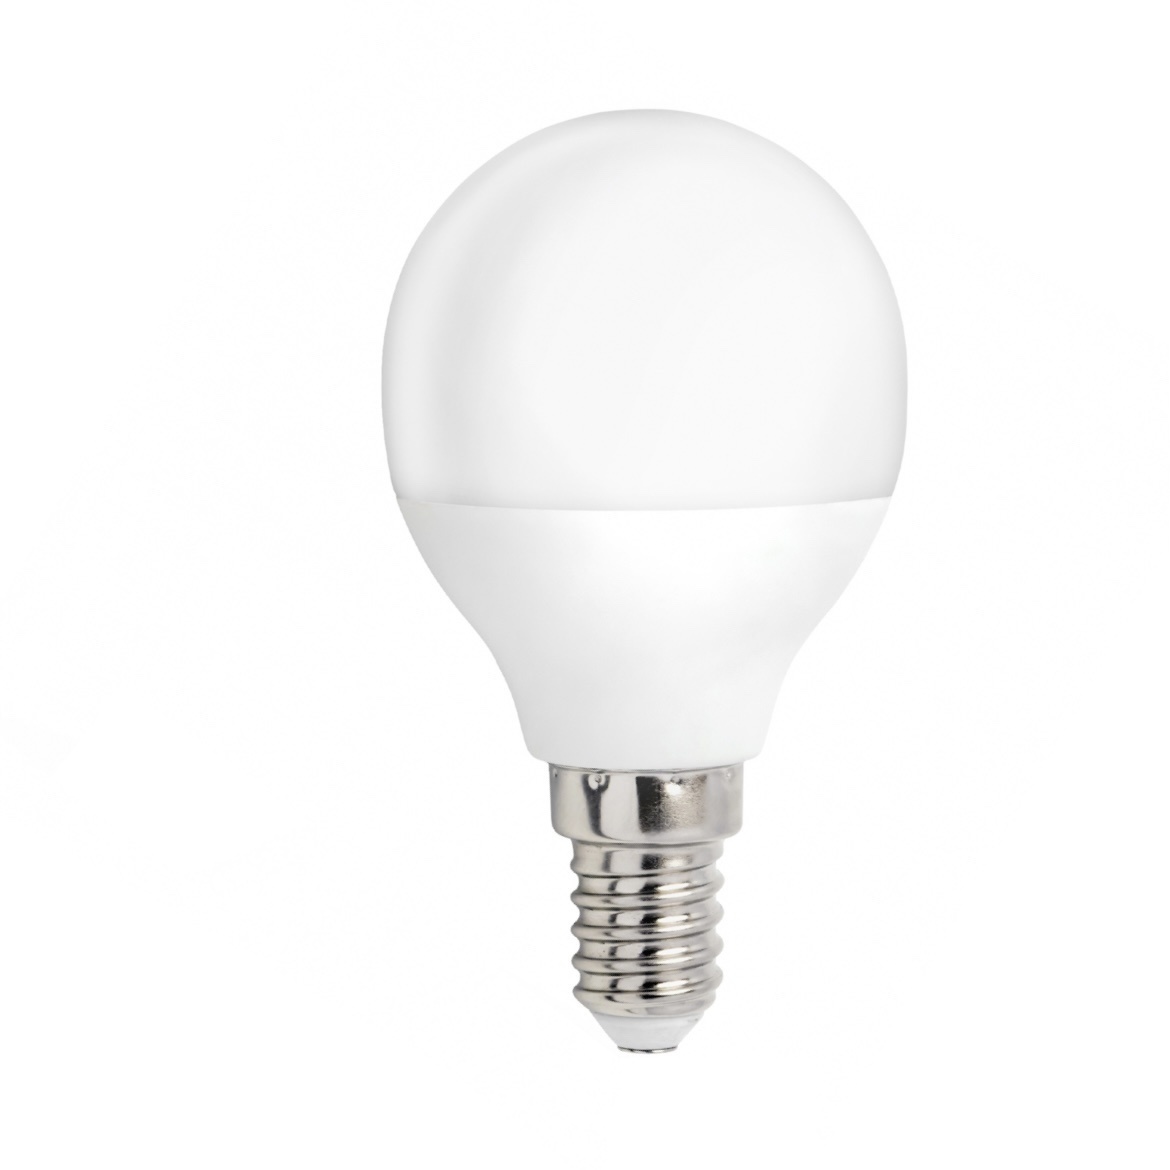 opvoeder vloeistof ingewikkeld LED lamp - E14 fitting - 3W vervangt 25W - Helder wit licht 4000K -  Ledlichtdiscounter.nl